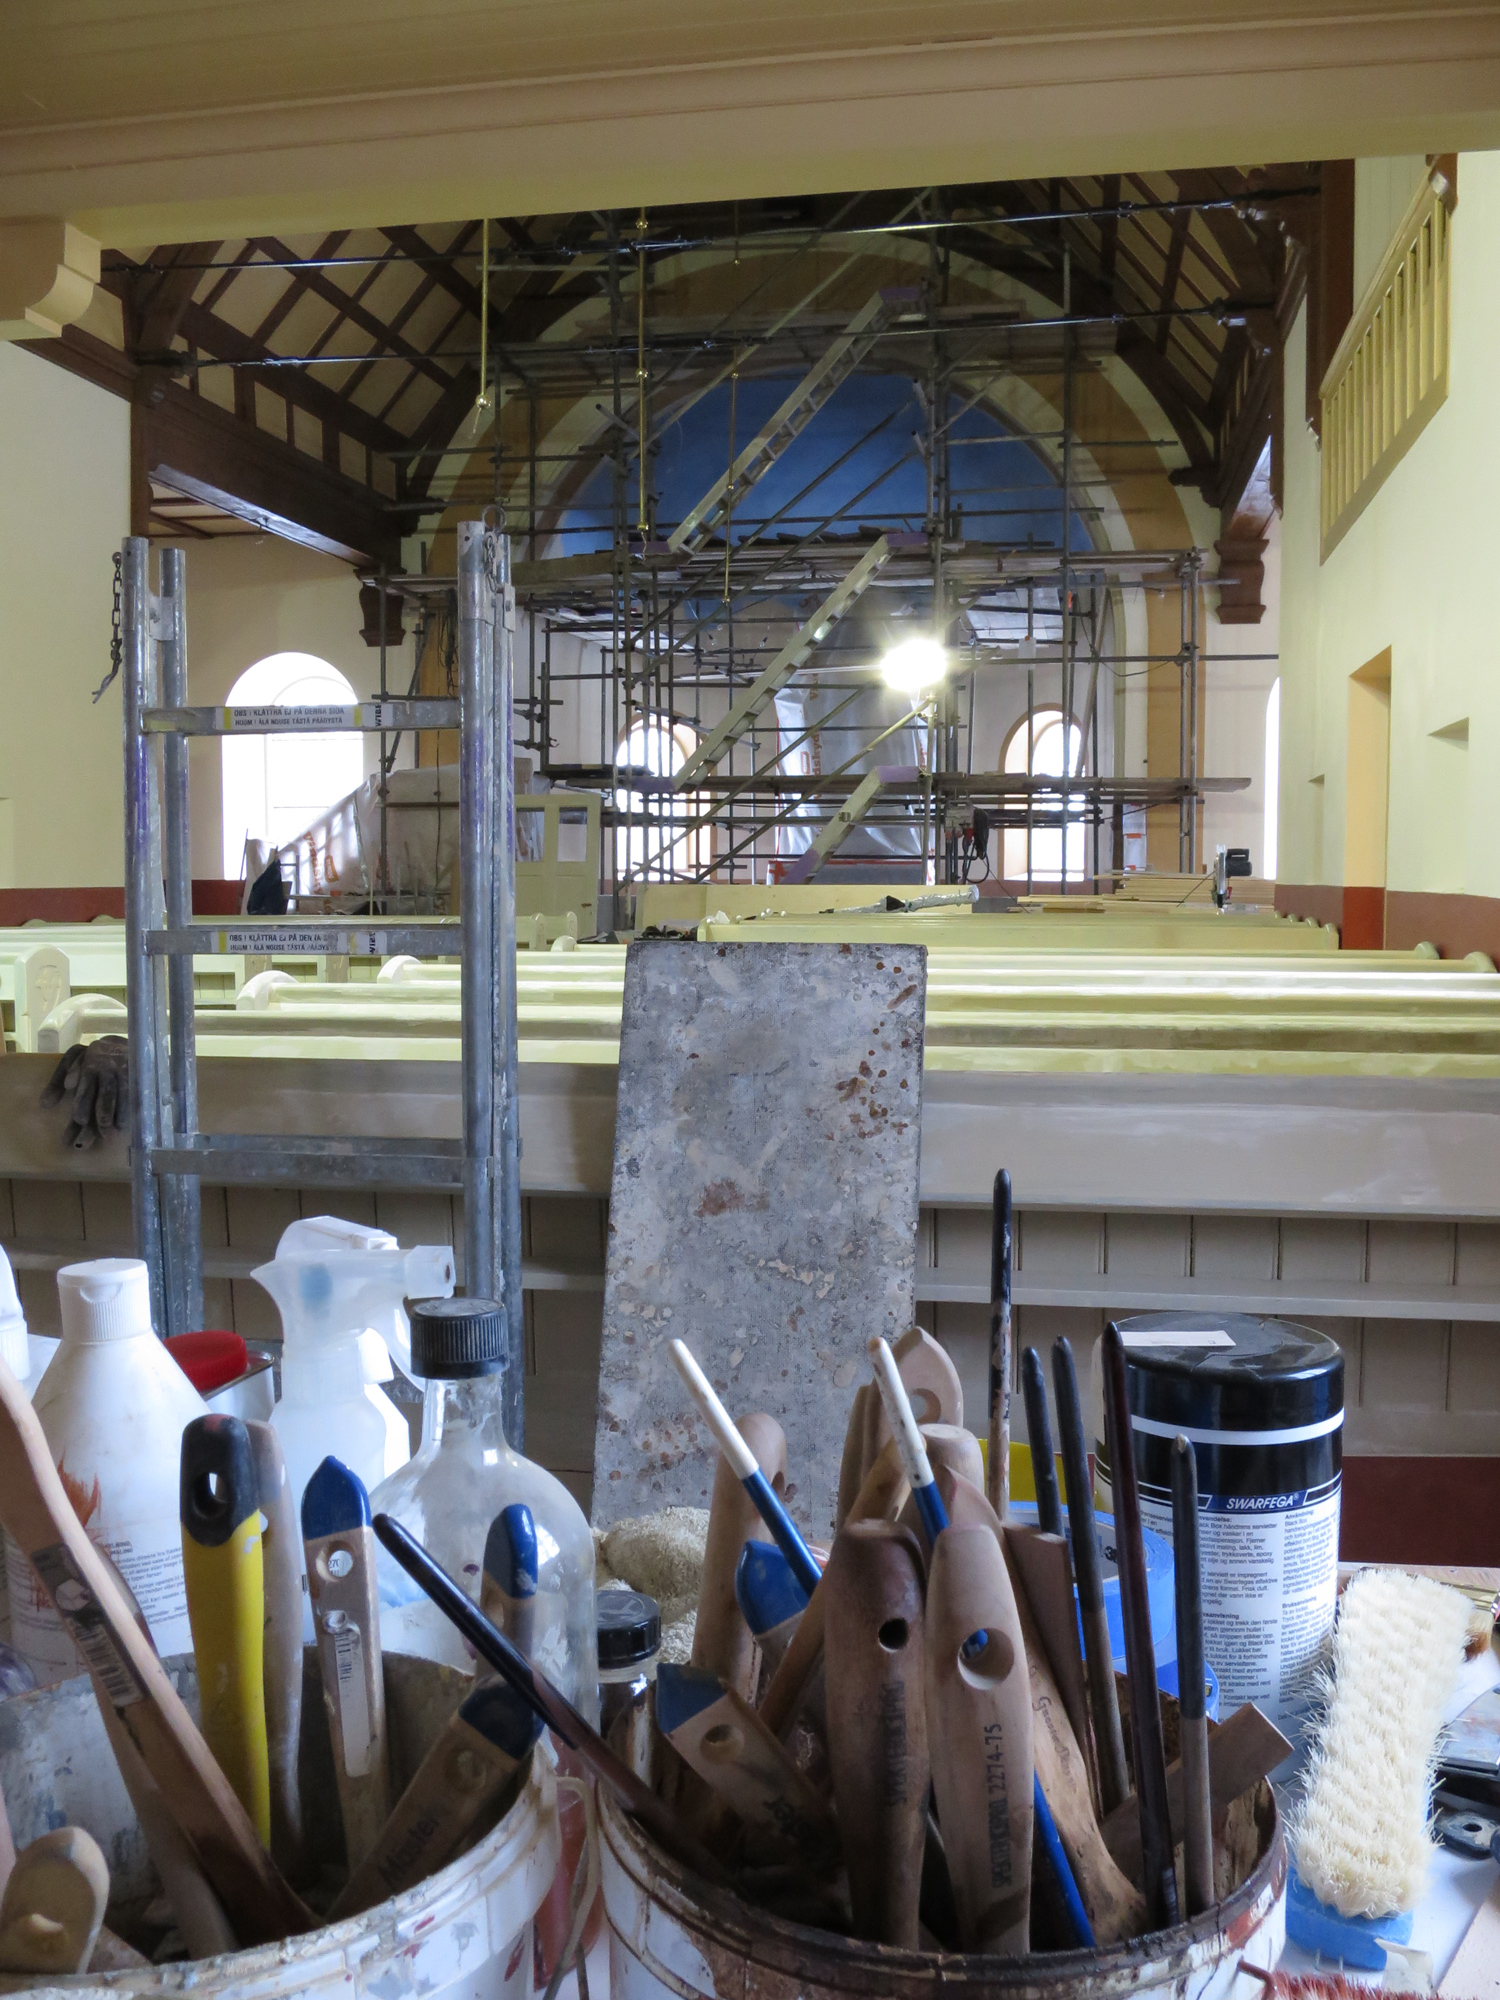 2015 års kyrkorum i renovering